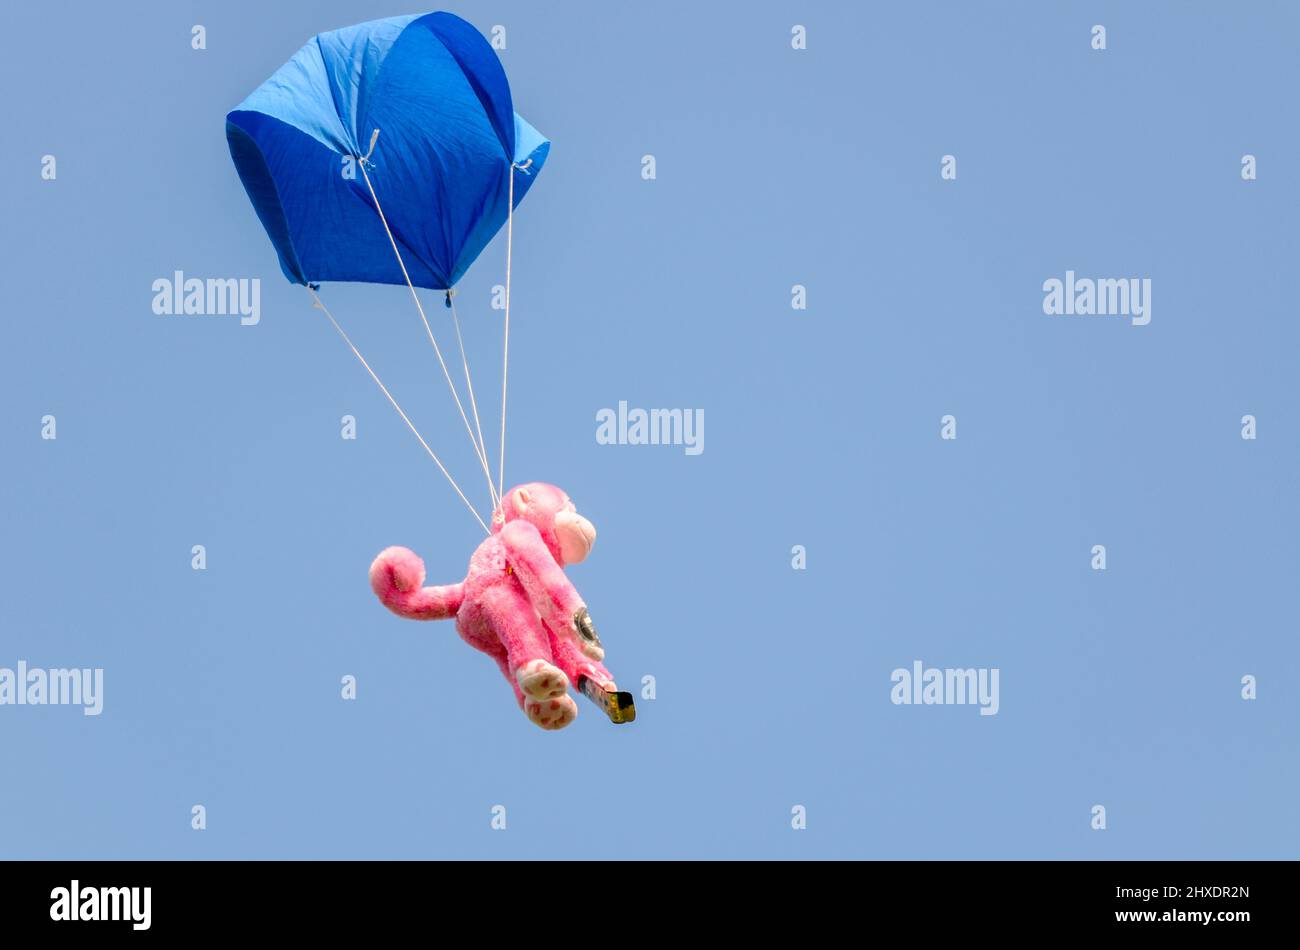 Humorvolle Luft Ereignis plushy Teddy Spielzeug Fallschirm Landung Genauigkeit Wettbewerb. Spielzeug mit Fallschirm aus einem Cessna-Flugzeug fallen gelassen, um in der Nähe eines Ziels zu landen Stockfoto